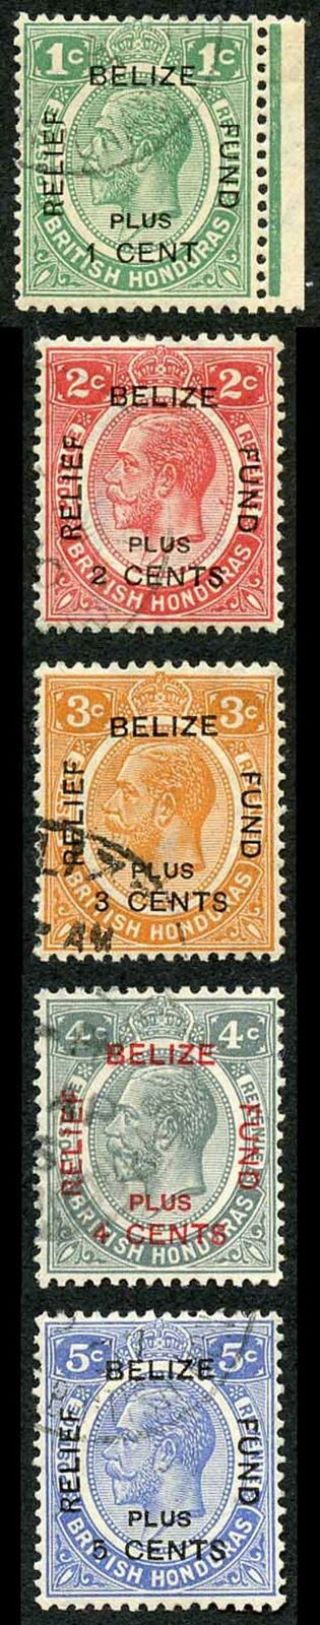 British Honduras Sg138/42 1932 Relief Set Fine